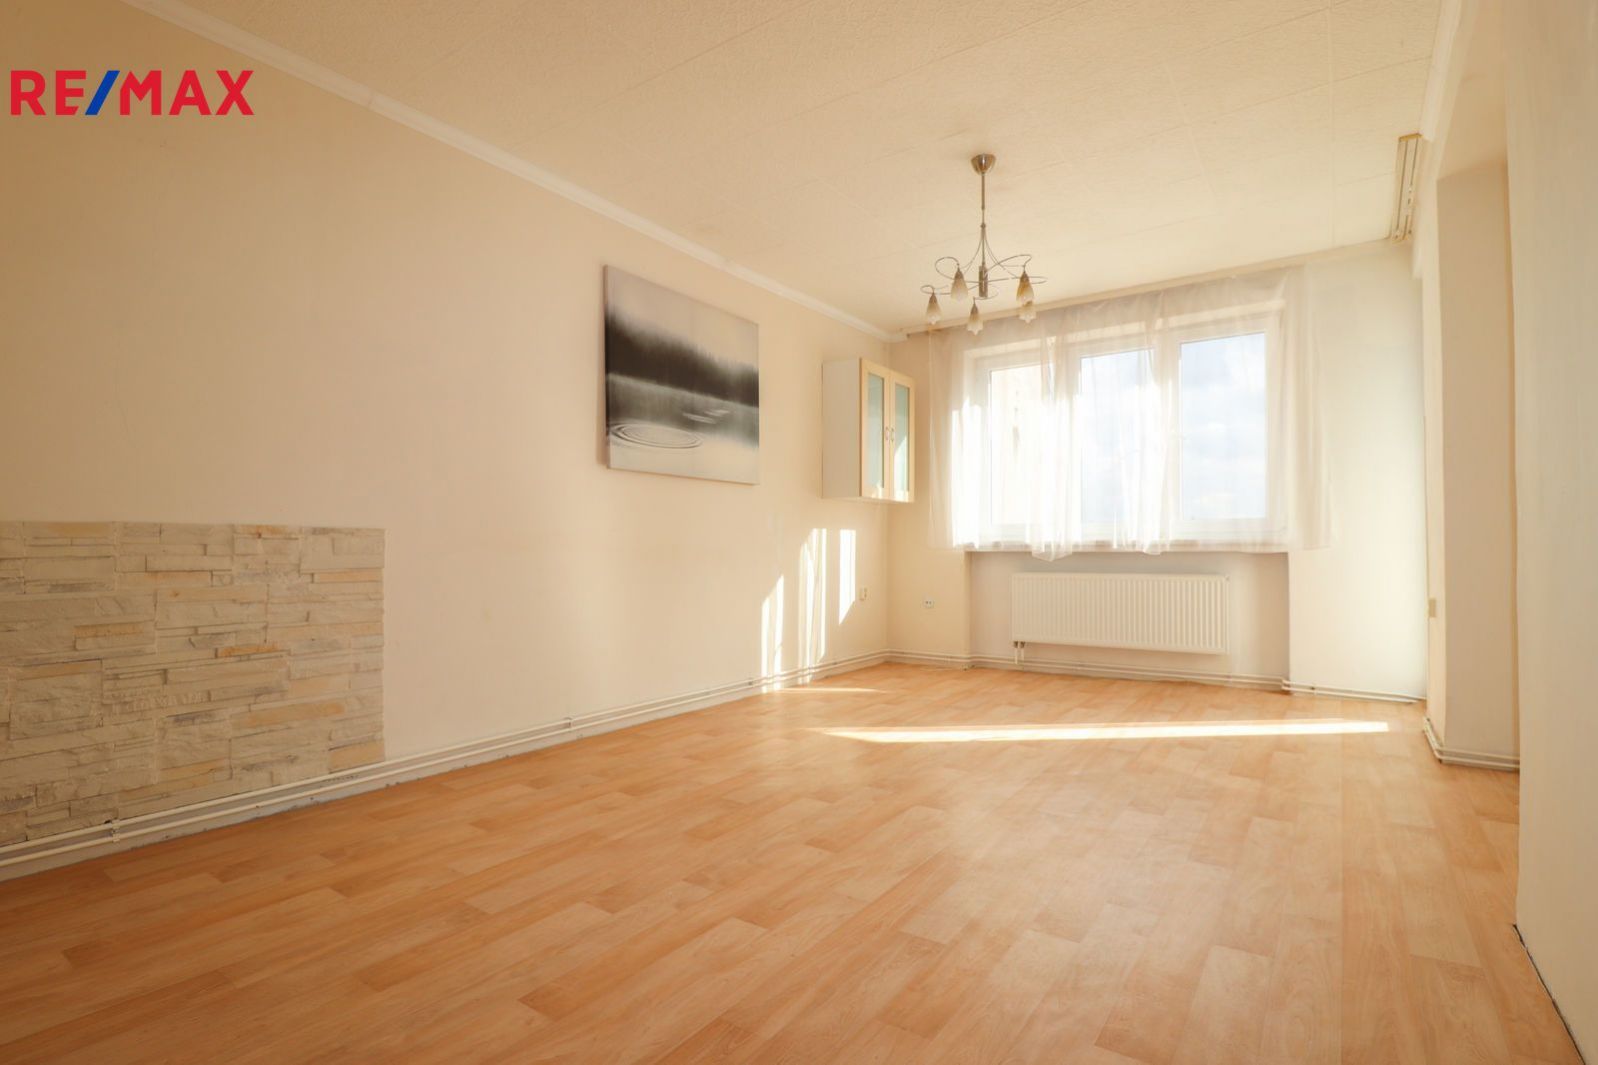 Prodej bytu 3+1 v osobním vlastnictví v centru Čáslavi o velikosti 68m., obrázek č. 2